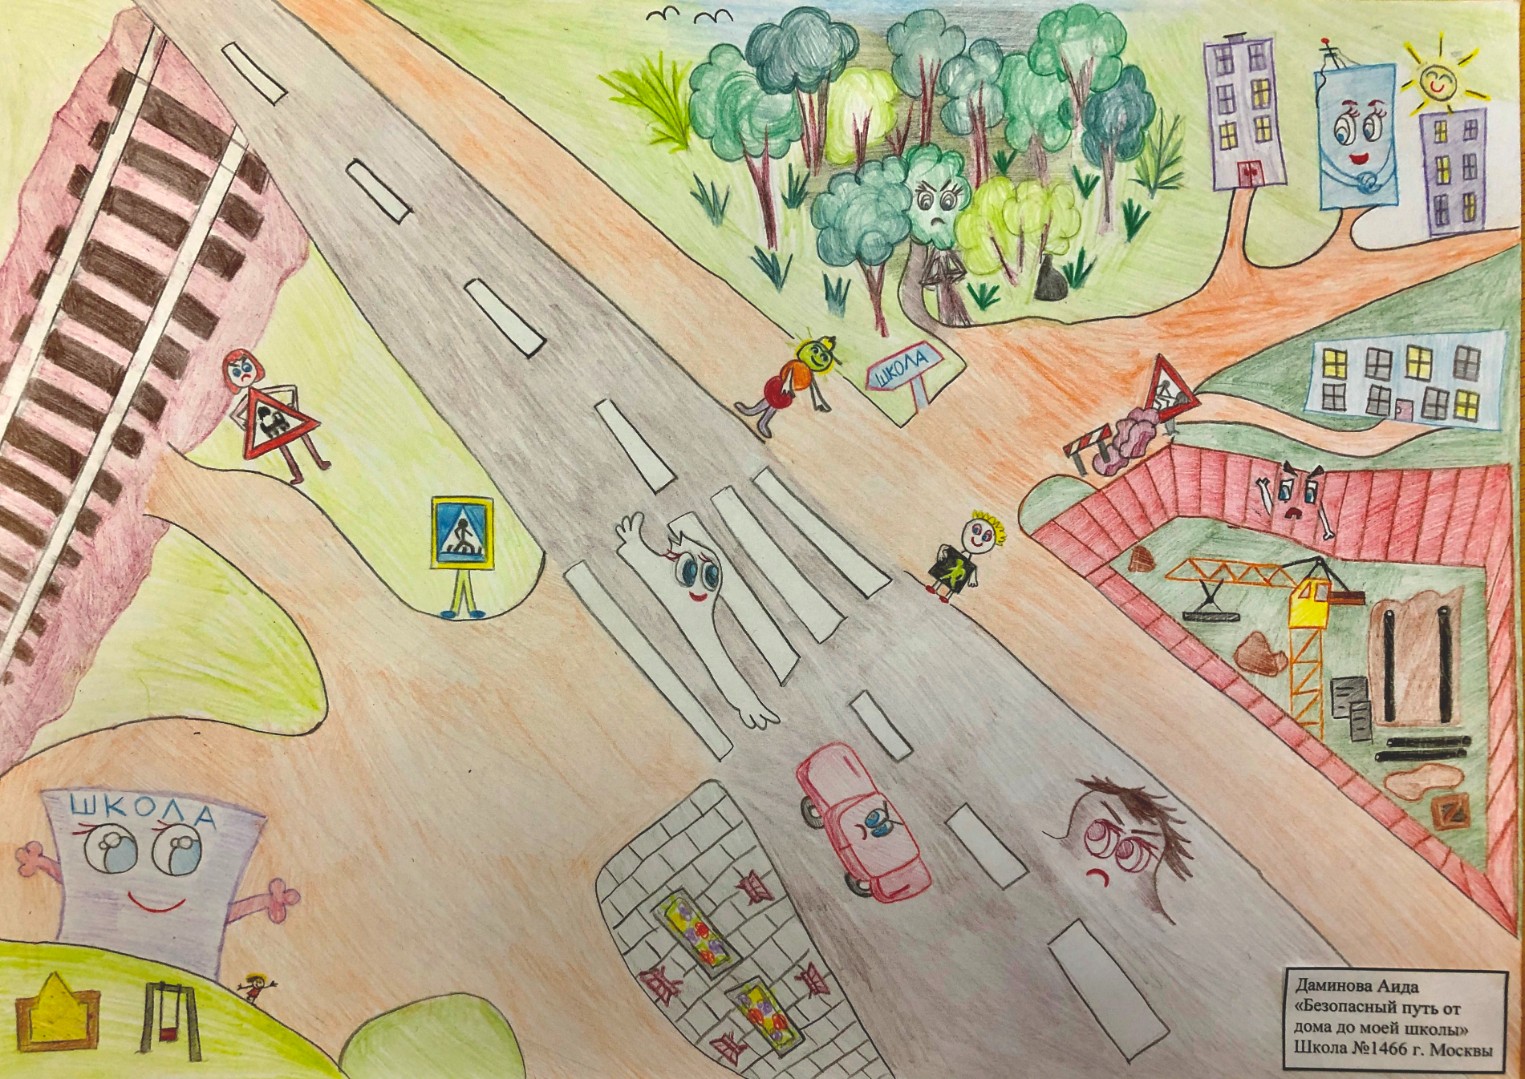 Рисунок безопасной дороги от дома до школы Южного города 2